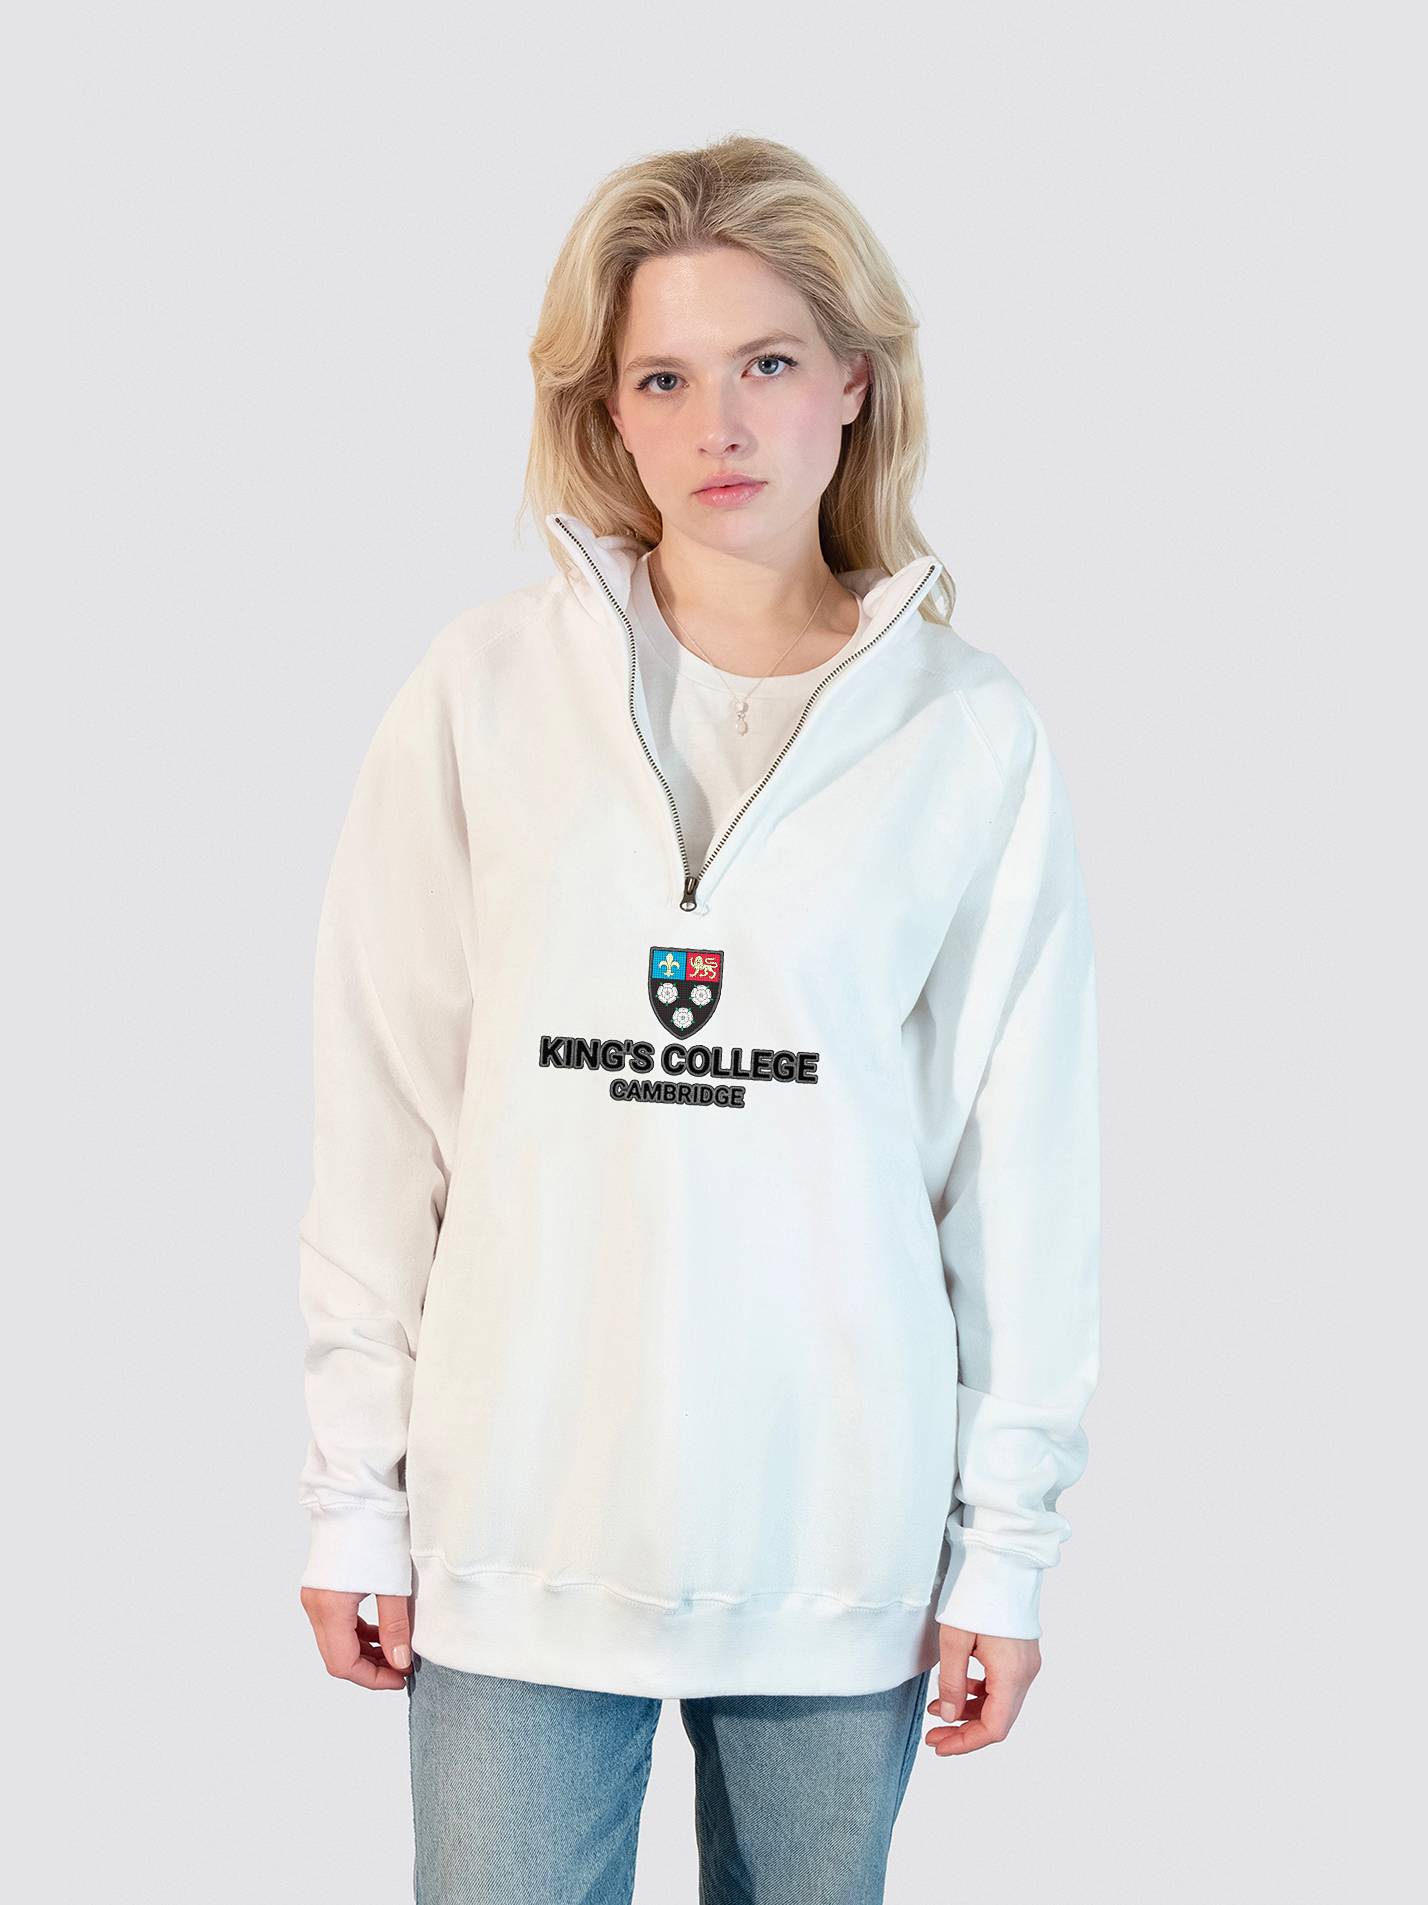 King's College Cambridge Heritage Unisex 1/4 Zip Sweatshirt